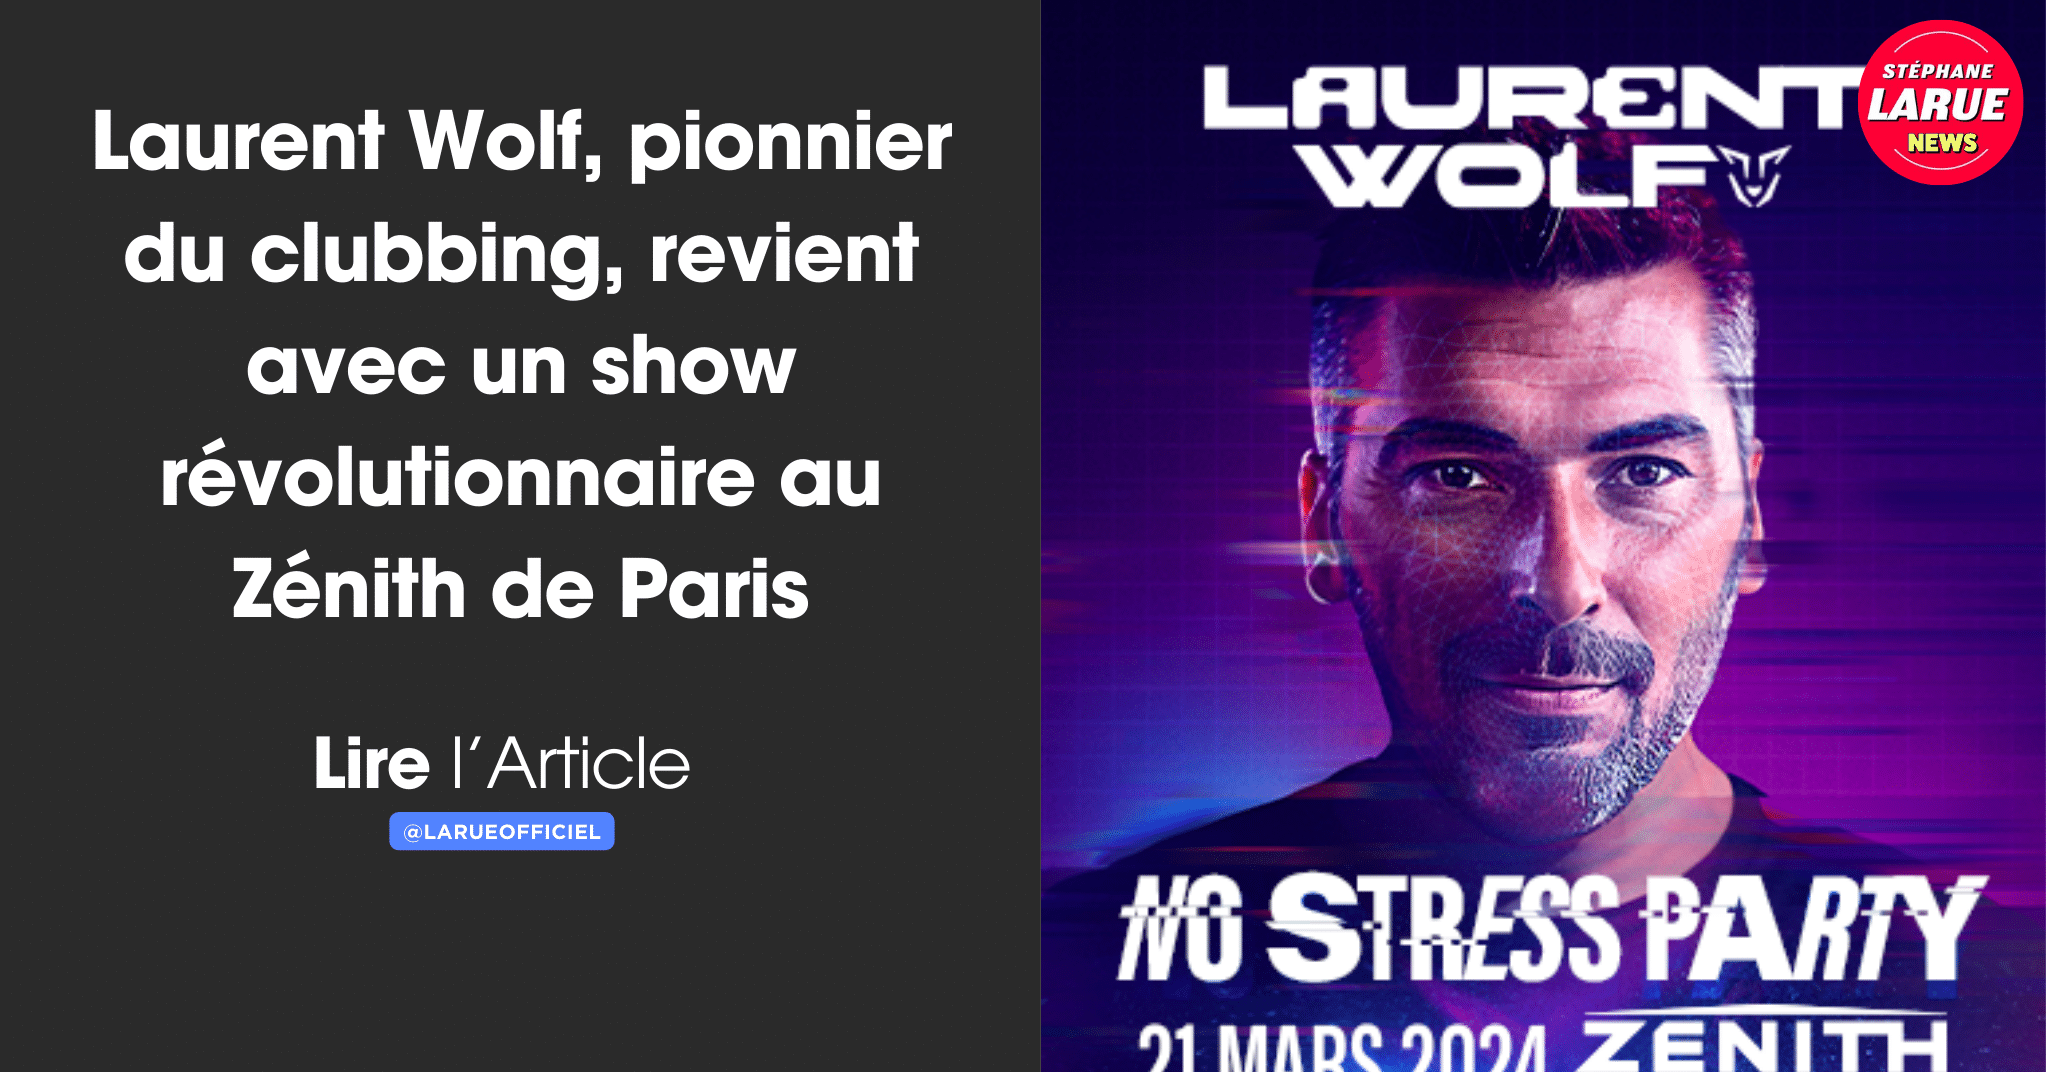 Laurent Wolf, pionnier du clubbing, revient avec un show révolutionnaire au Zénith de Paris